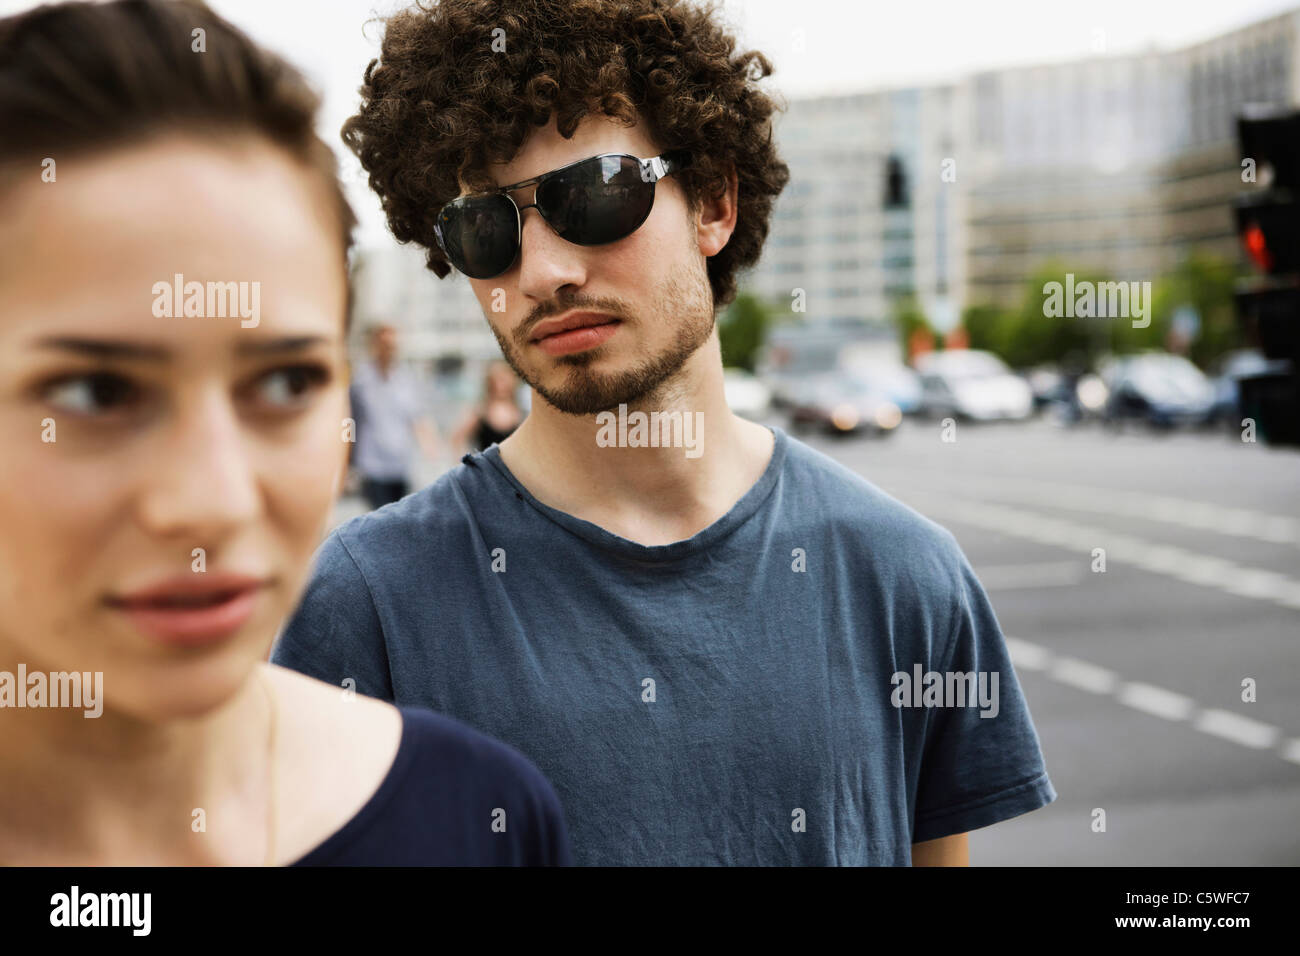 Germania, Berlino, coppia giovane, ritratto, close-up Foto Stock